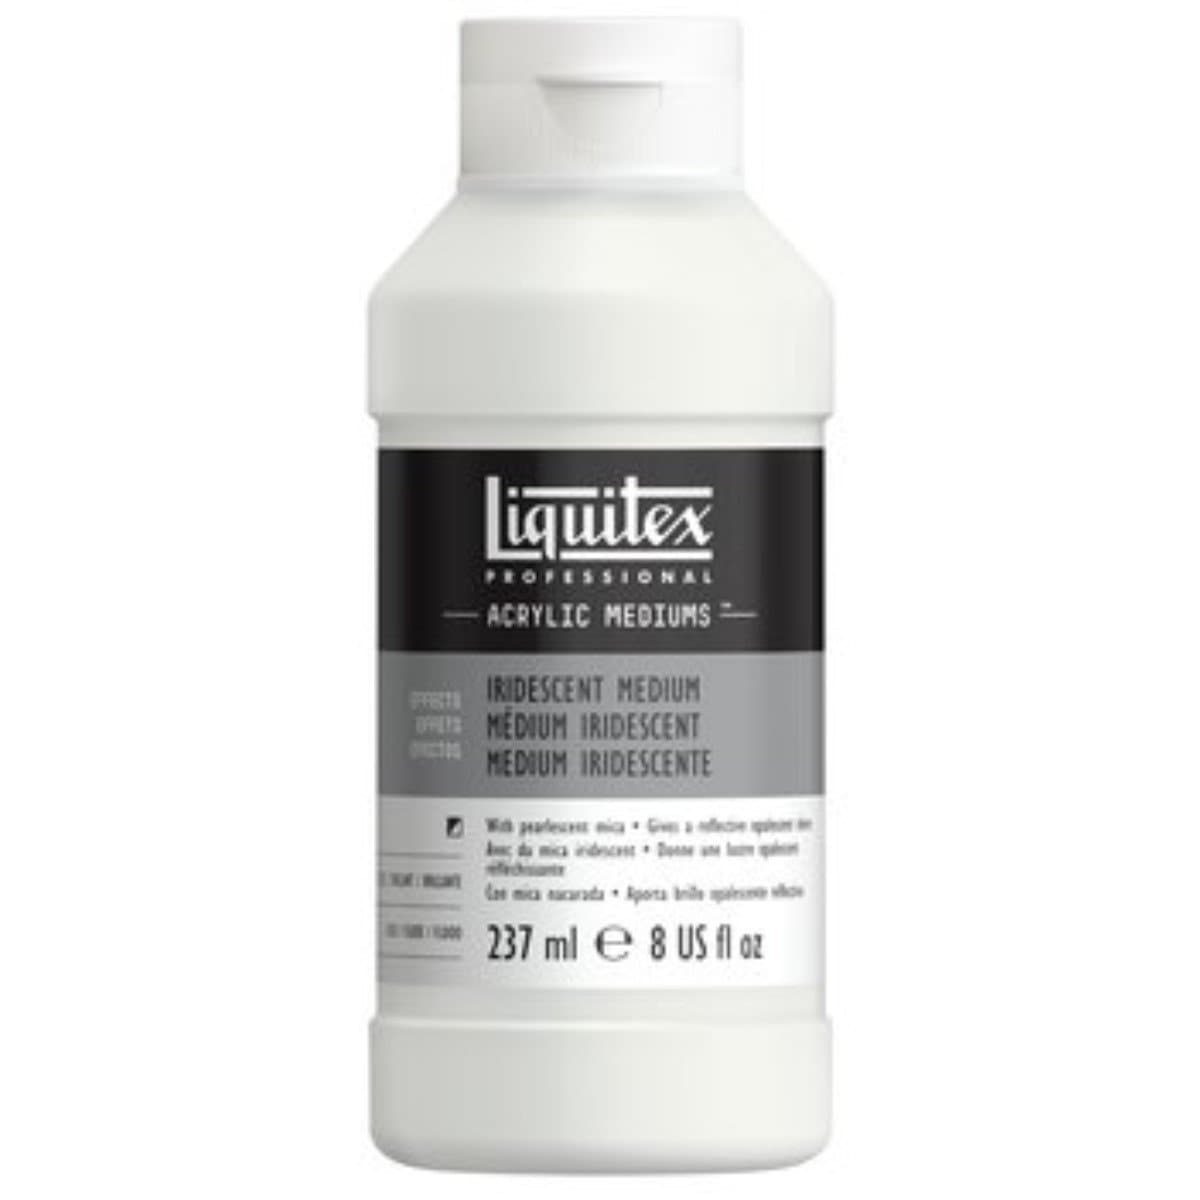 LIQUITEX - Medio iridiscente profesional 237 ml